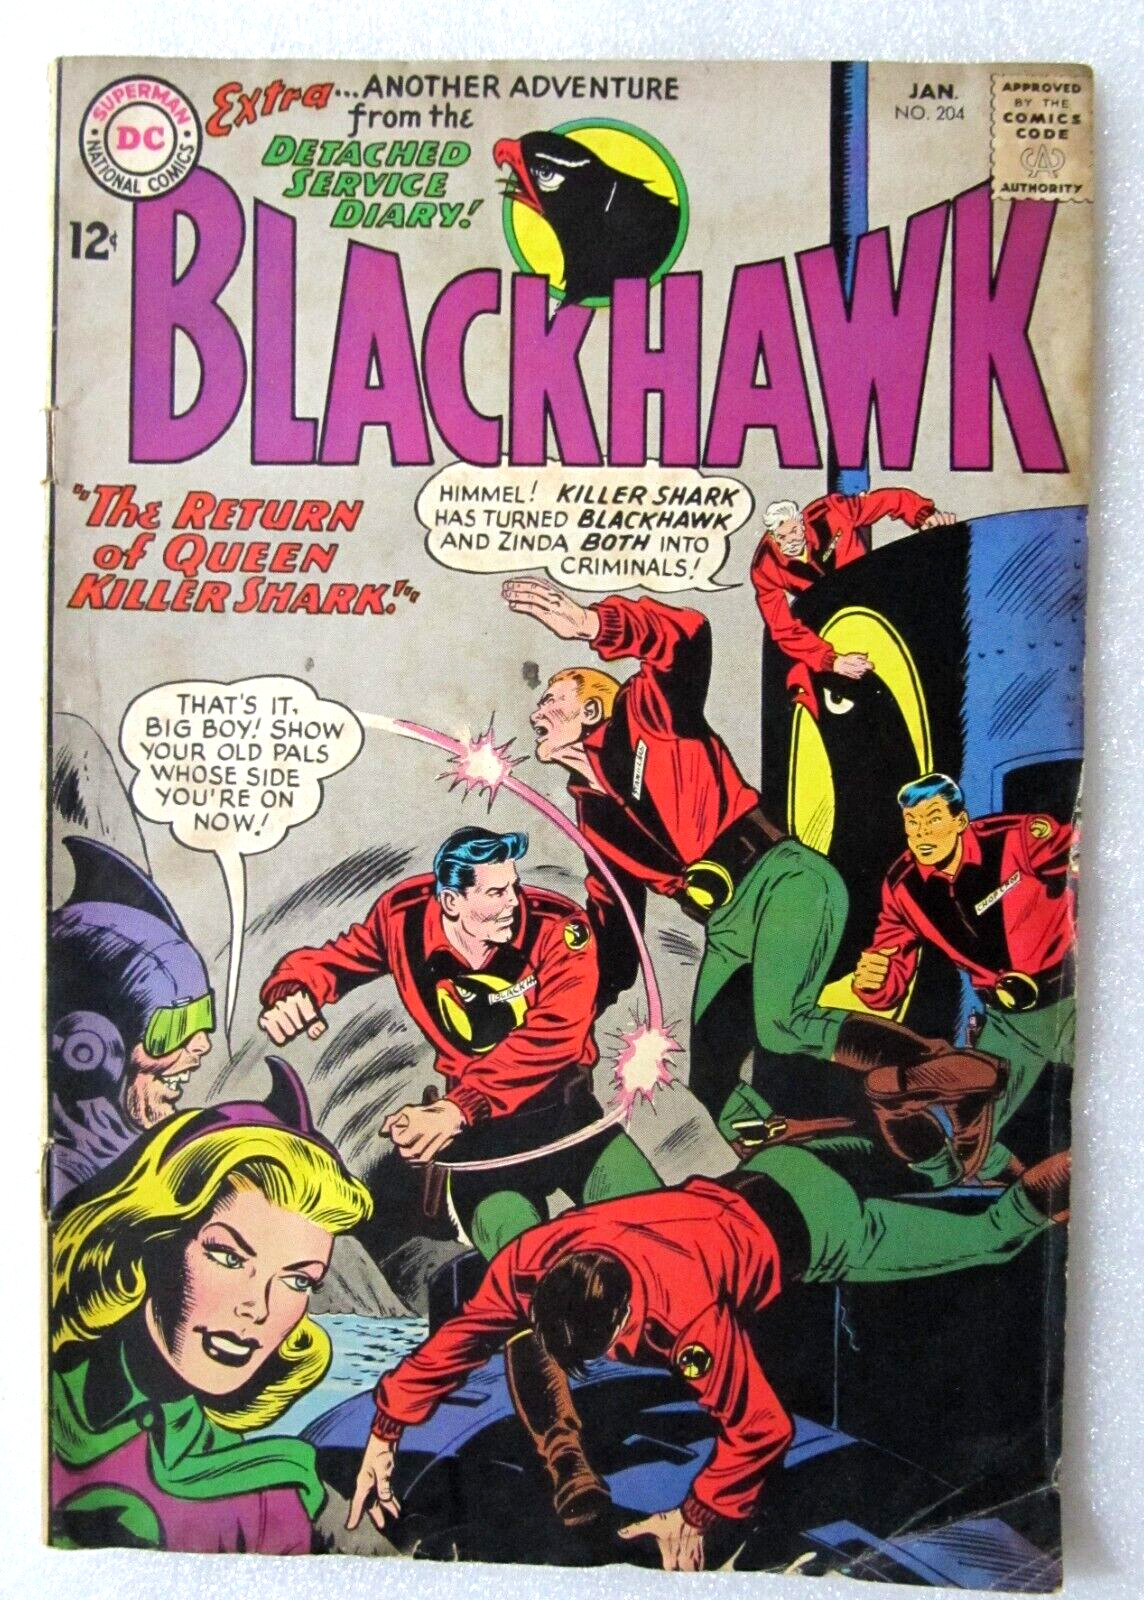 BLACKHAWK #204 - 1965 SILVER AGE DC COMIC - BAGGED